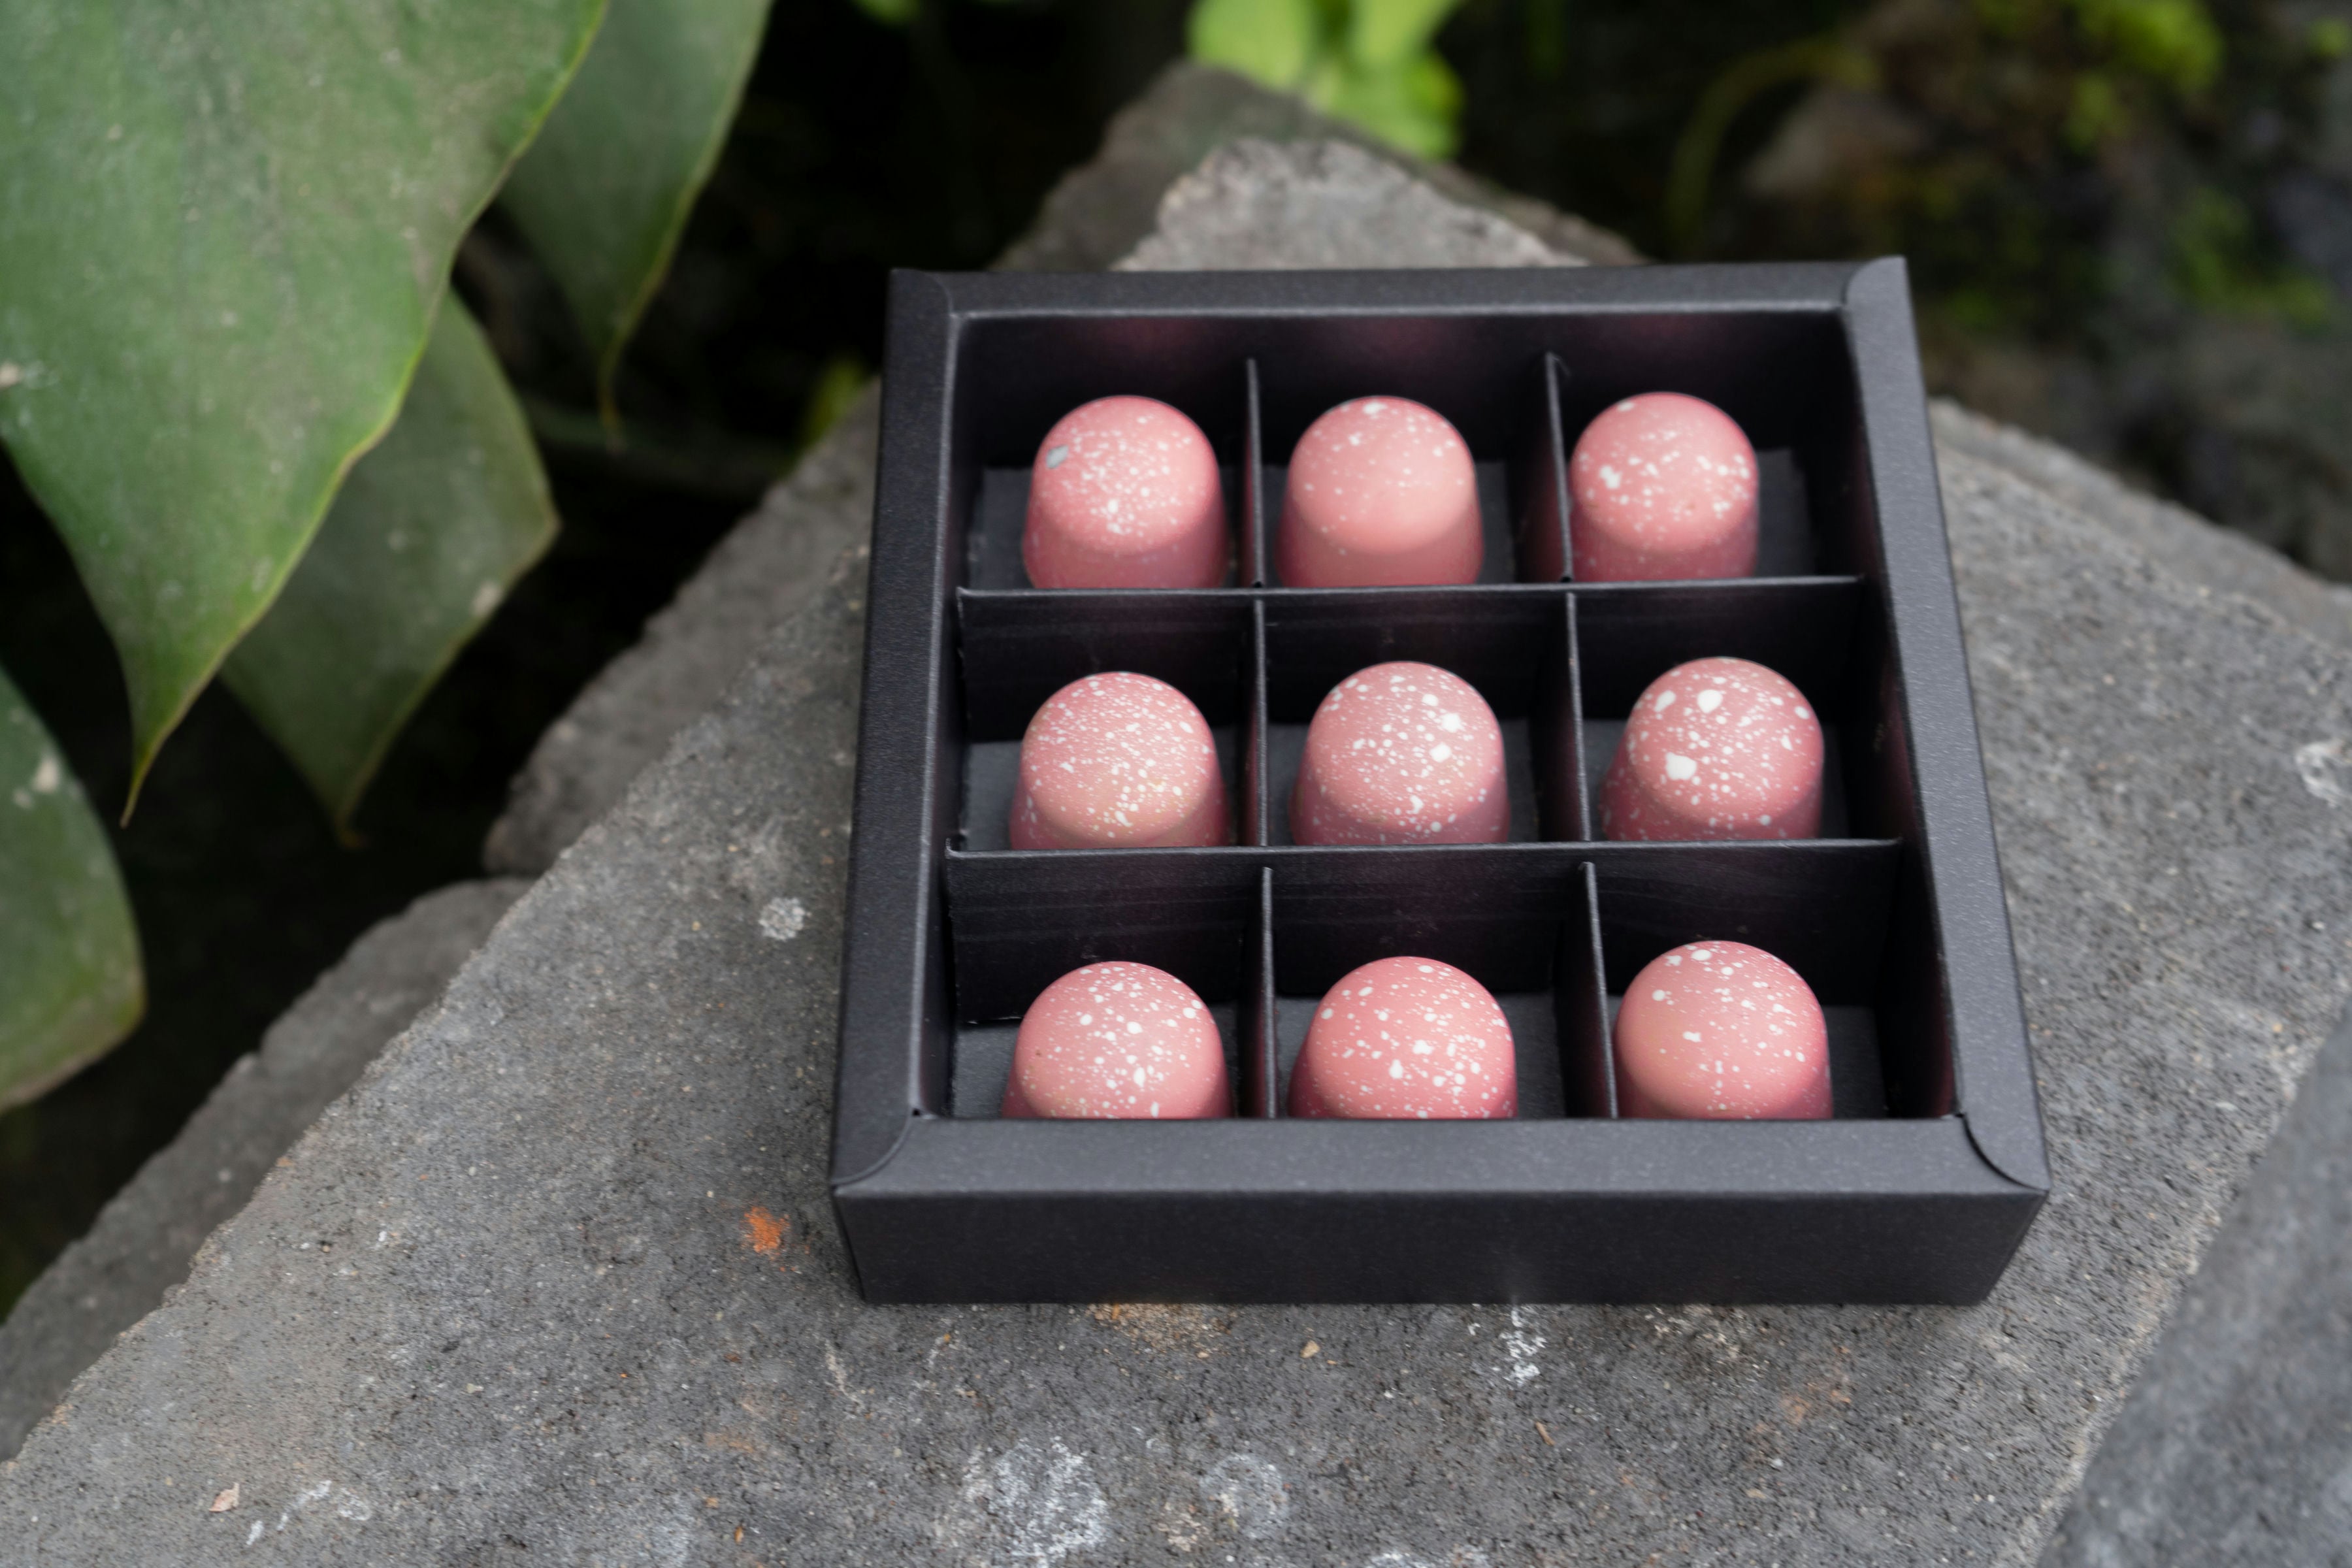 Mooie roze bonbons met een ganache van rozensiroop-kokosmelk. Proeft net als bij oma! Deze bonbons worden stuk voor stuk met de hand vervaardigd. Verpakt in doosje met 9 bonbons.